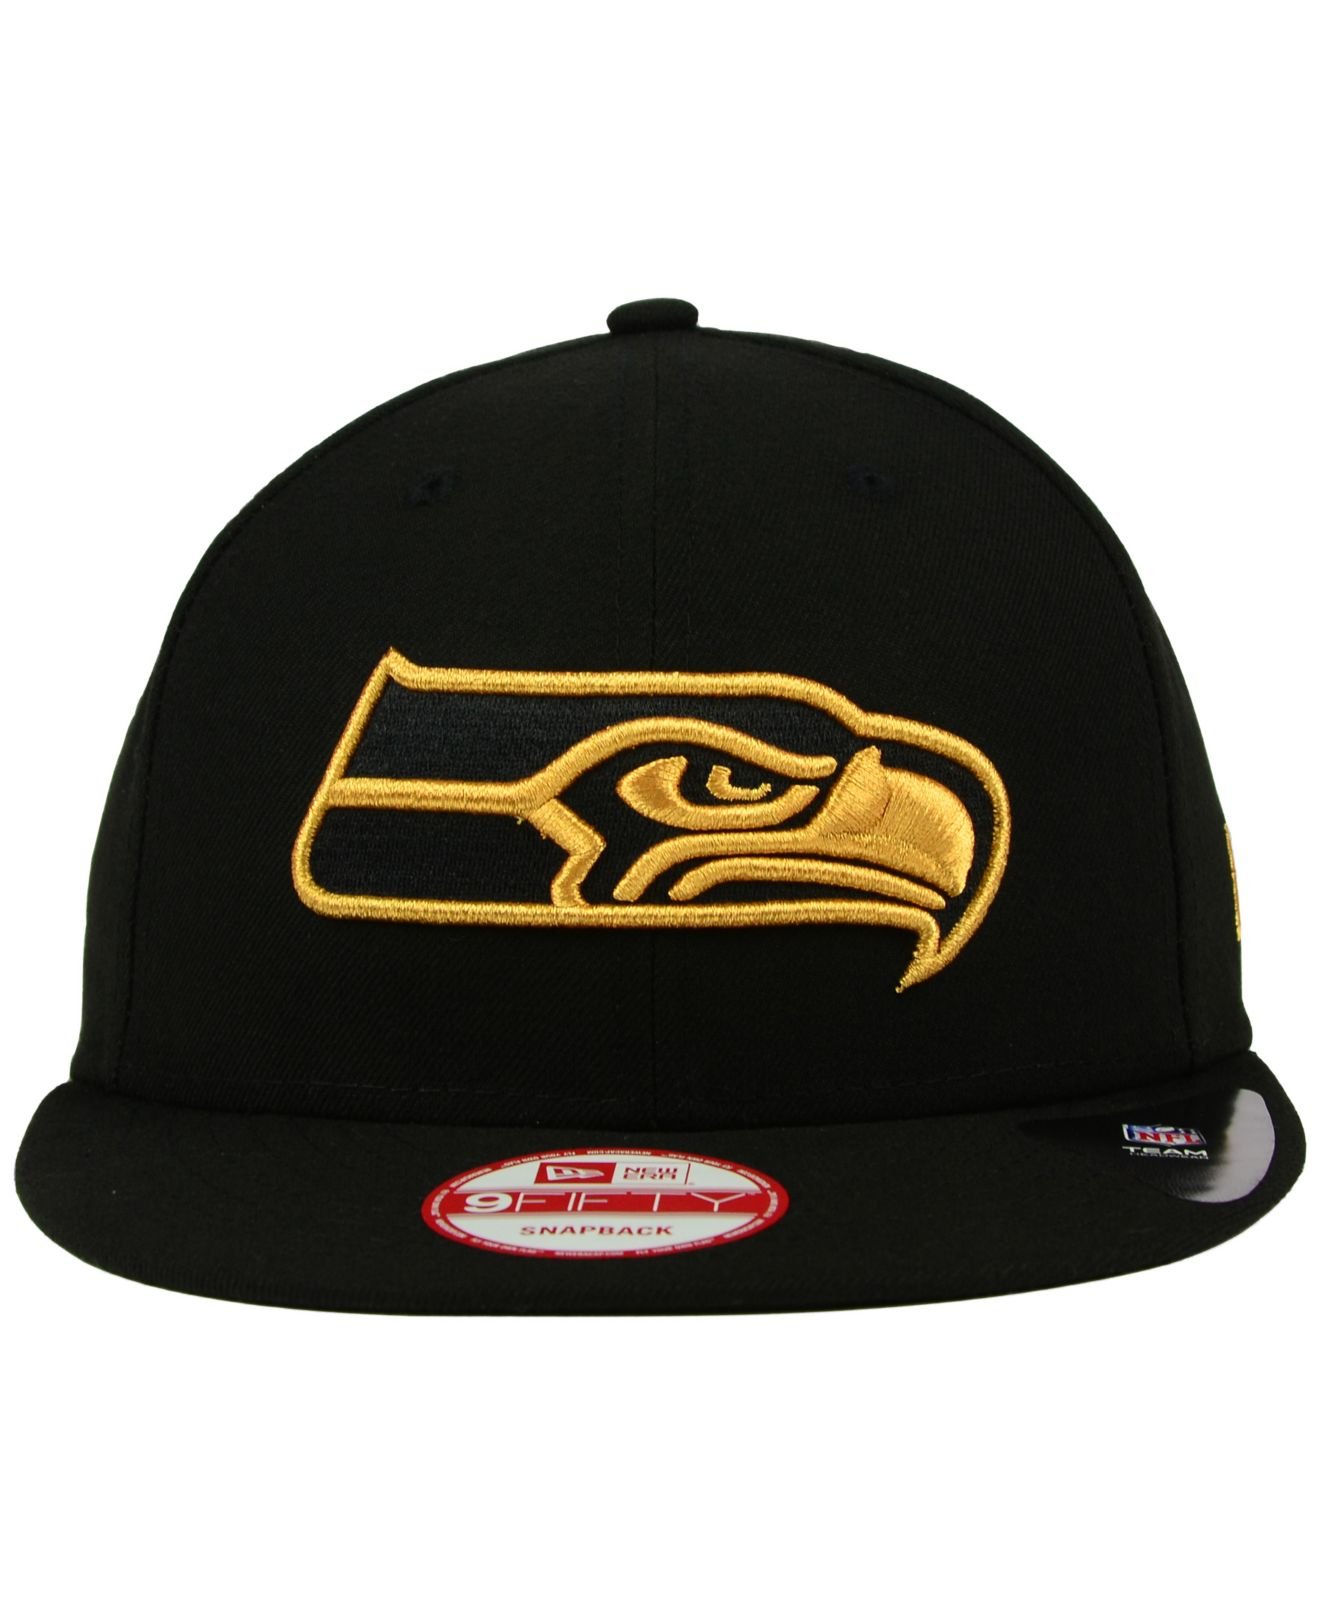 seahawks hats lids